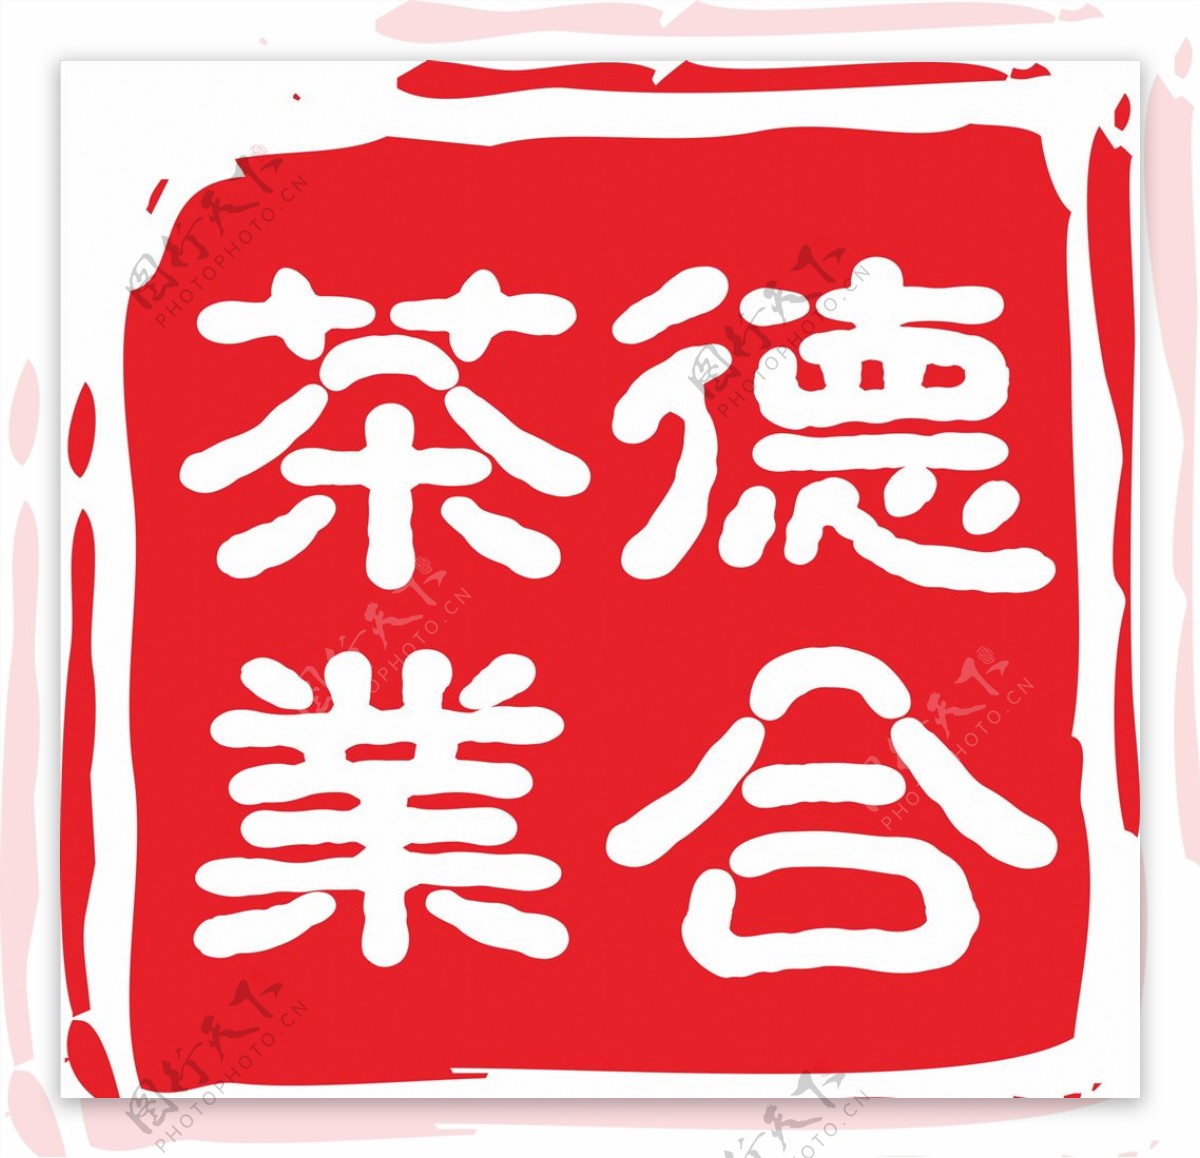 茶行logo